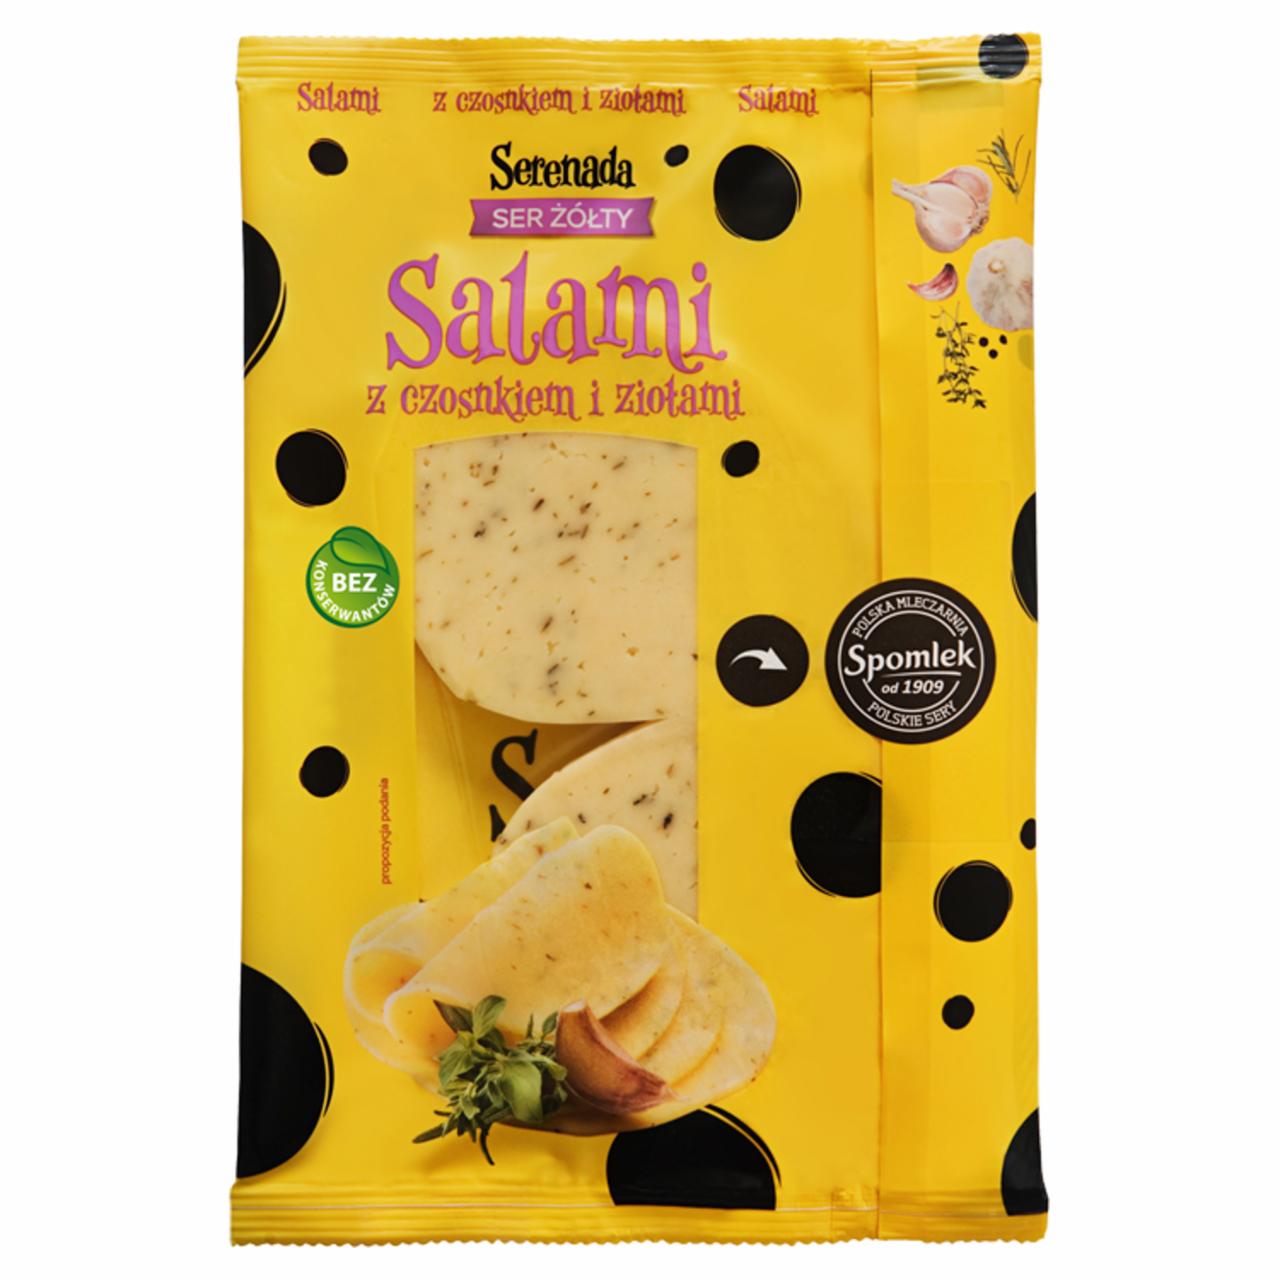 Zdjęcia - Ser żółty salami z czosnkiem i ziołami Serenada